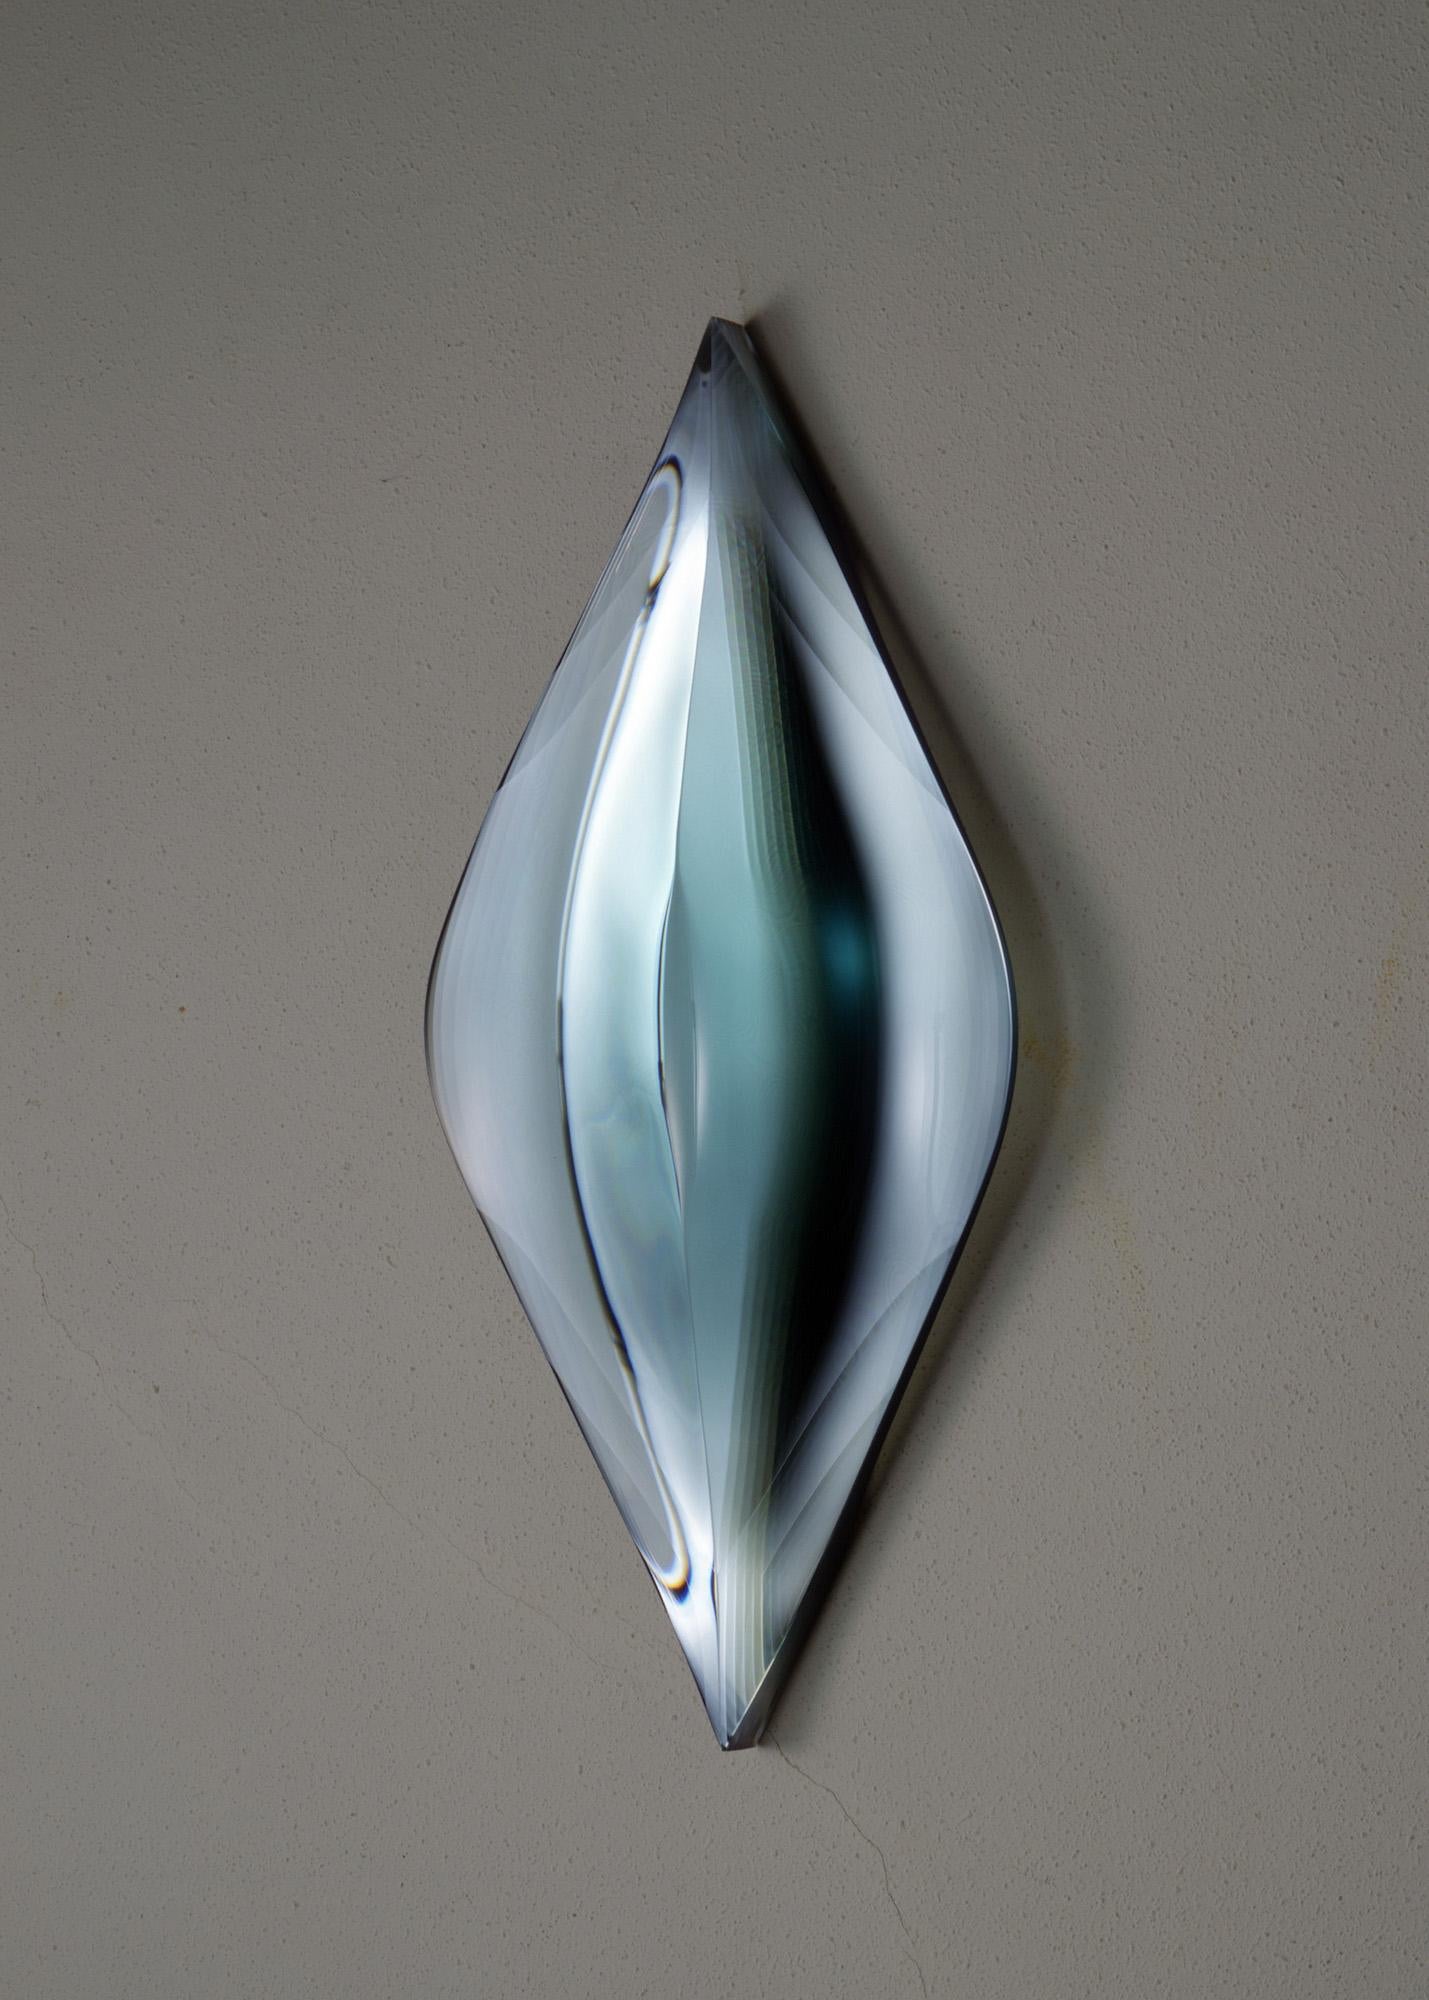 P.010502 ist eine Glasskulptur des japanischen zeitgenössischen Künstlers Toshio Iezumi mit den Maßen 74 × 32 × 9 cm (29,1 × 12,6 × 3,5 Zoll). 
Die Skulptur ist signiert und nummeriert, gehört zu einer limitierten Auflage von 8 Exemplaren und wird